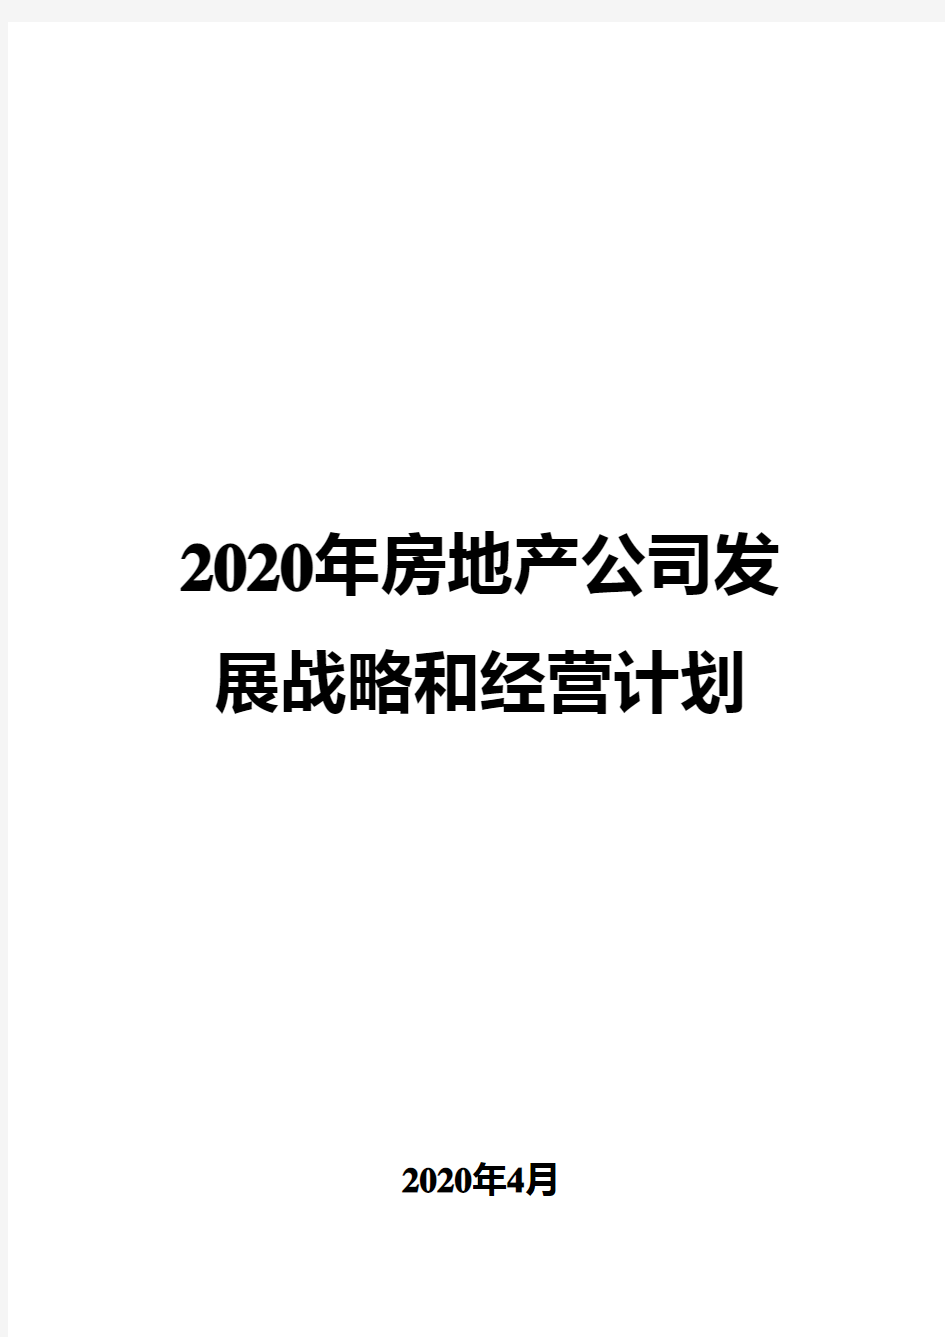 2020年房地产公司发展战略和经营计划